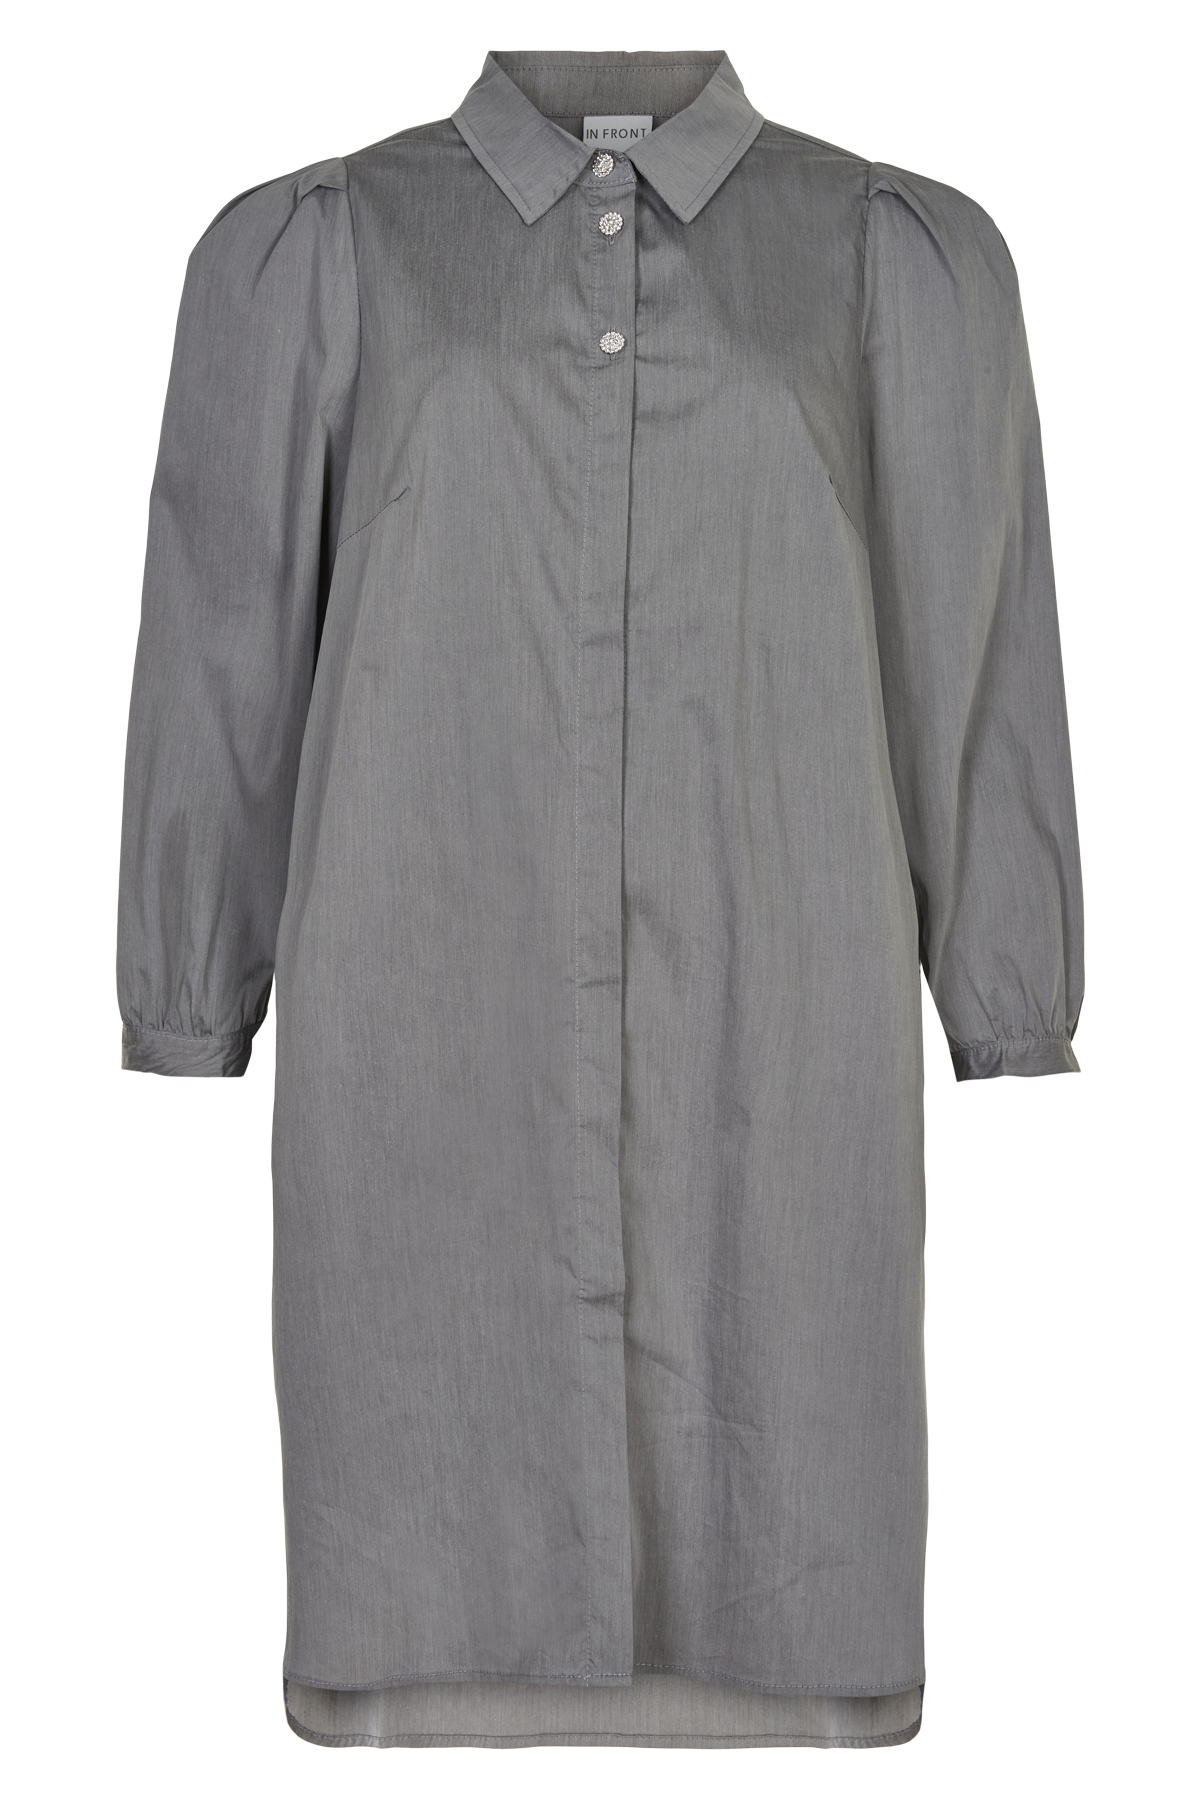 Se IN FRONT Alicia Lang Skjorte, Farve: Grey, Størrelse: S, Dame hos Infront Women